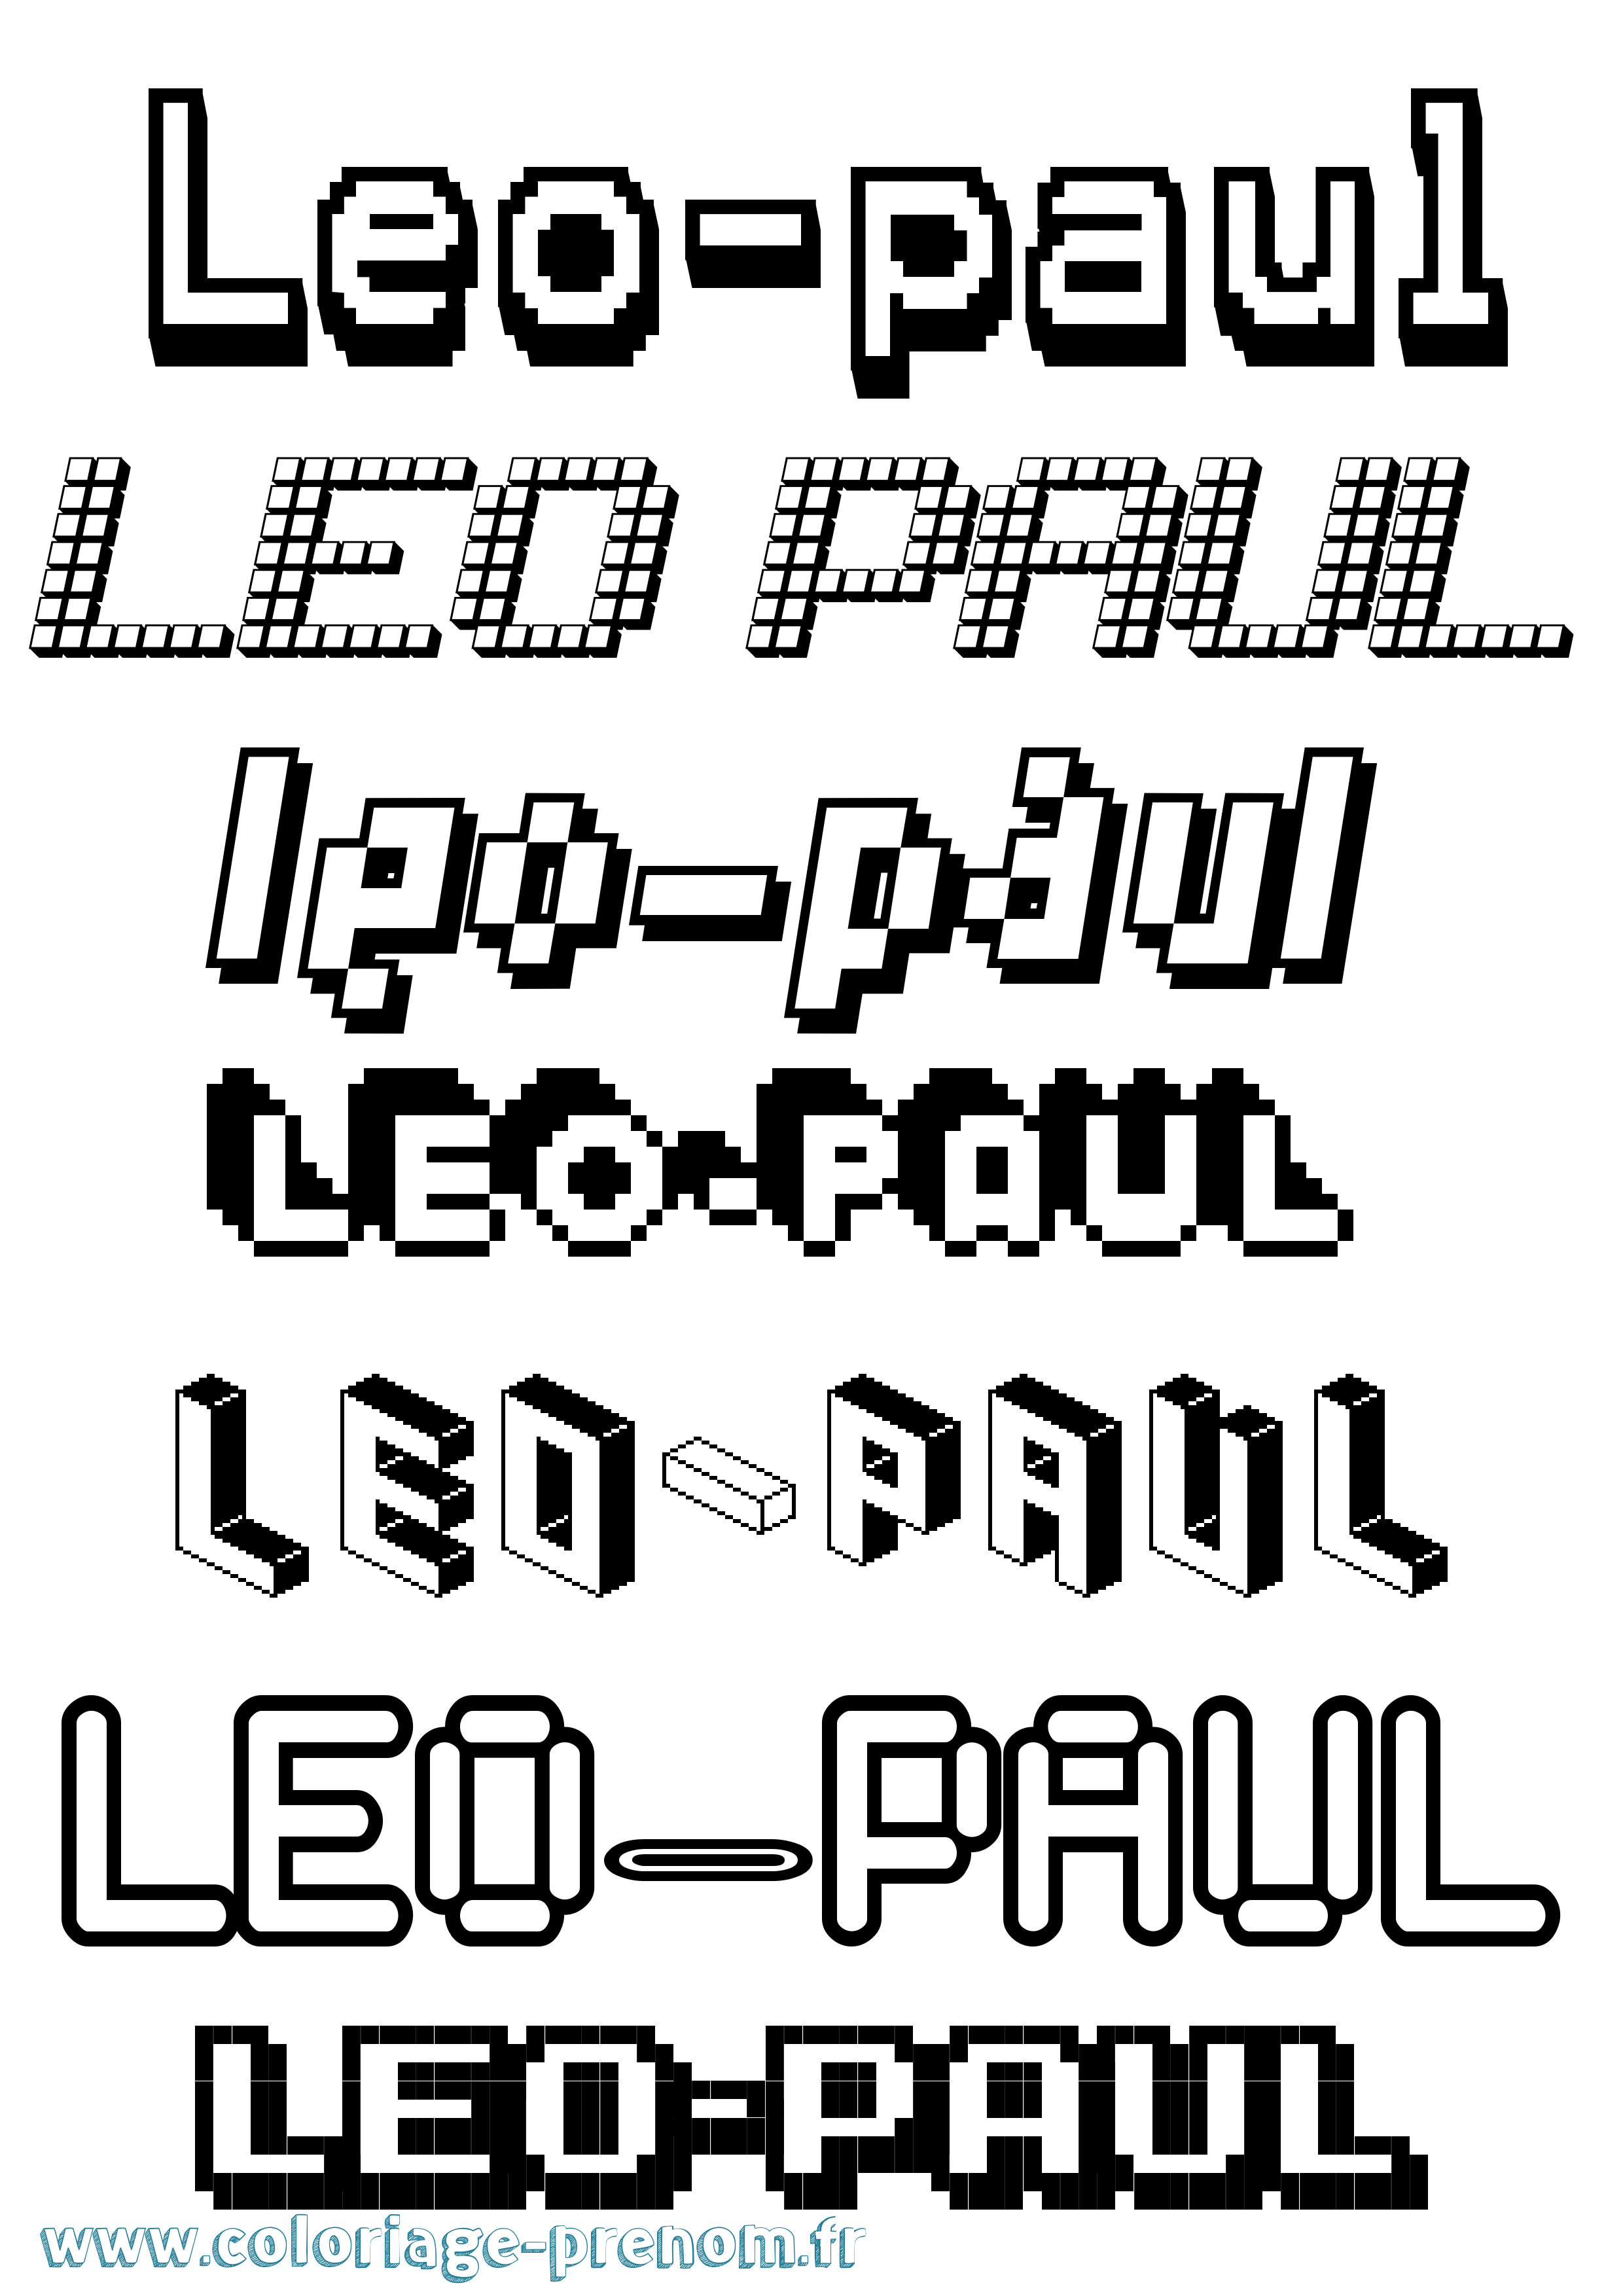 Coloriage prénom Leo-Paul Pixel